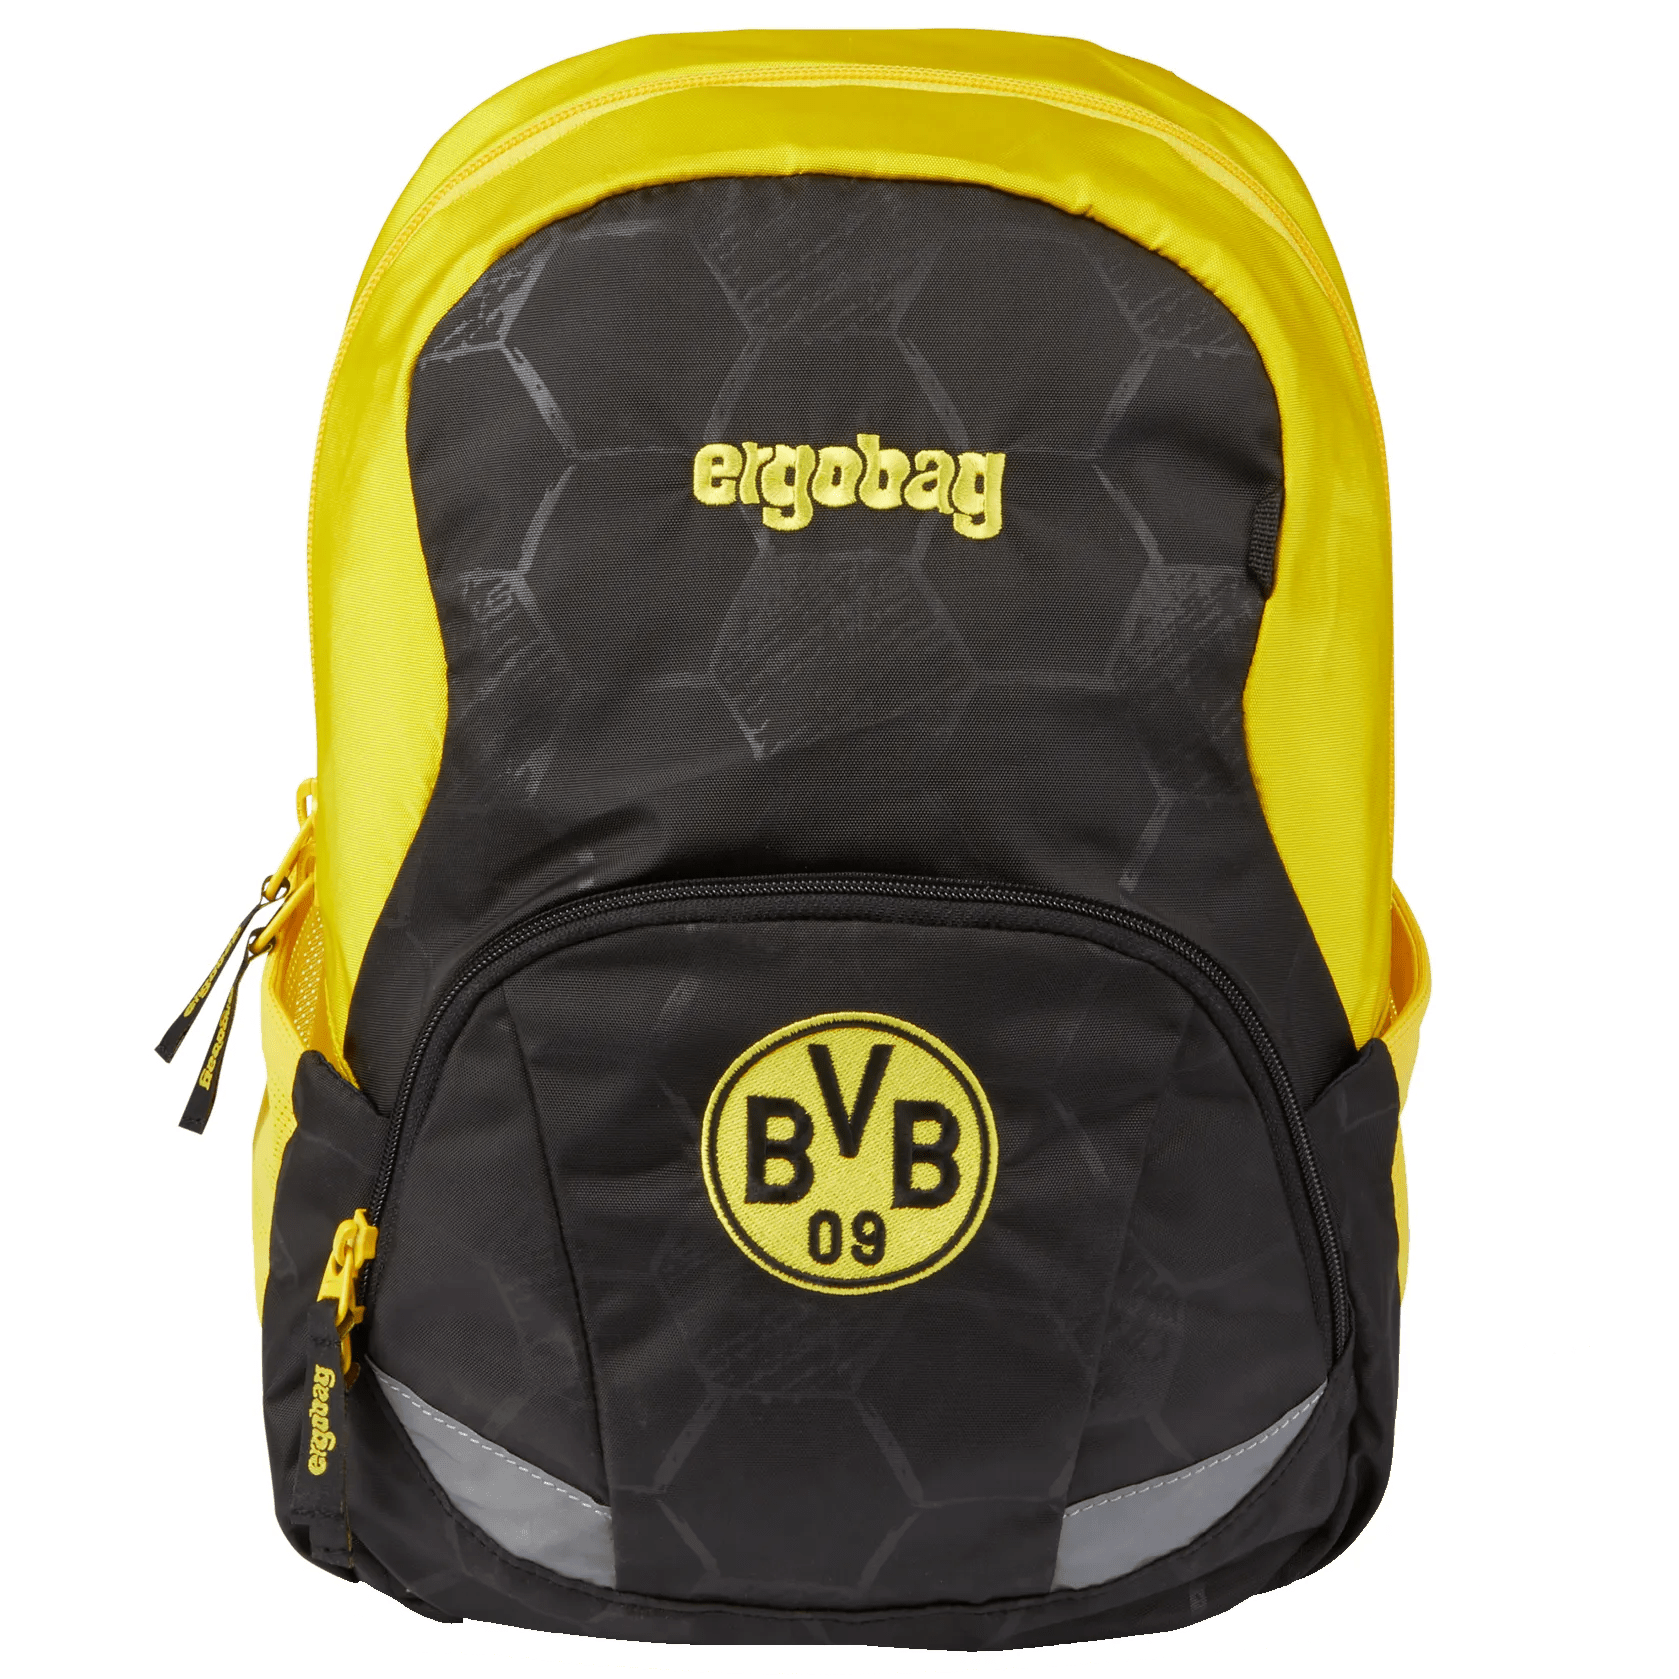 Ergobag Ease Large children's backpack 35 cm - Borussia Dortmund